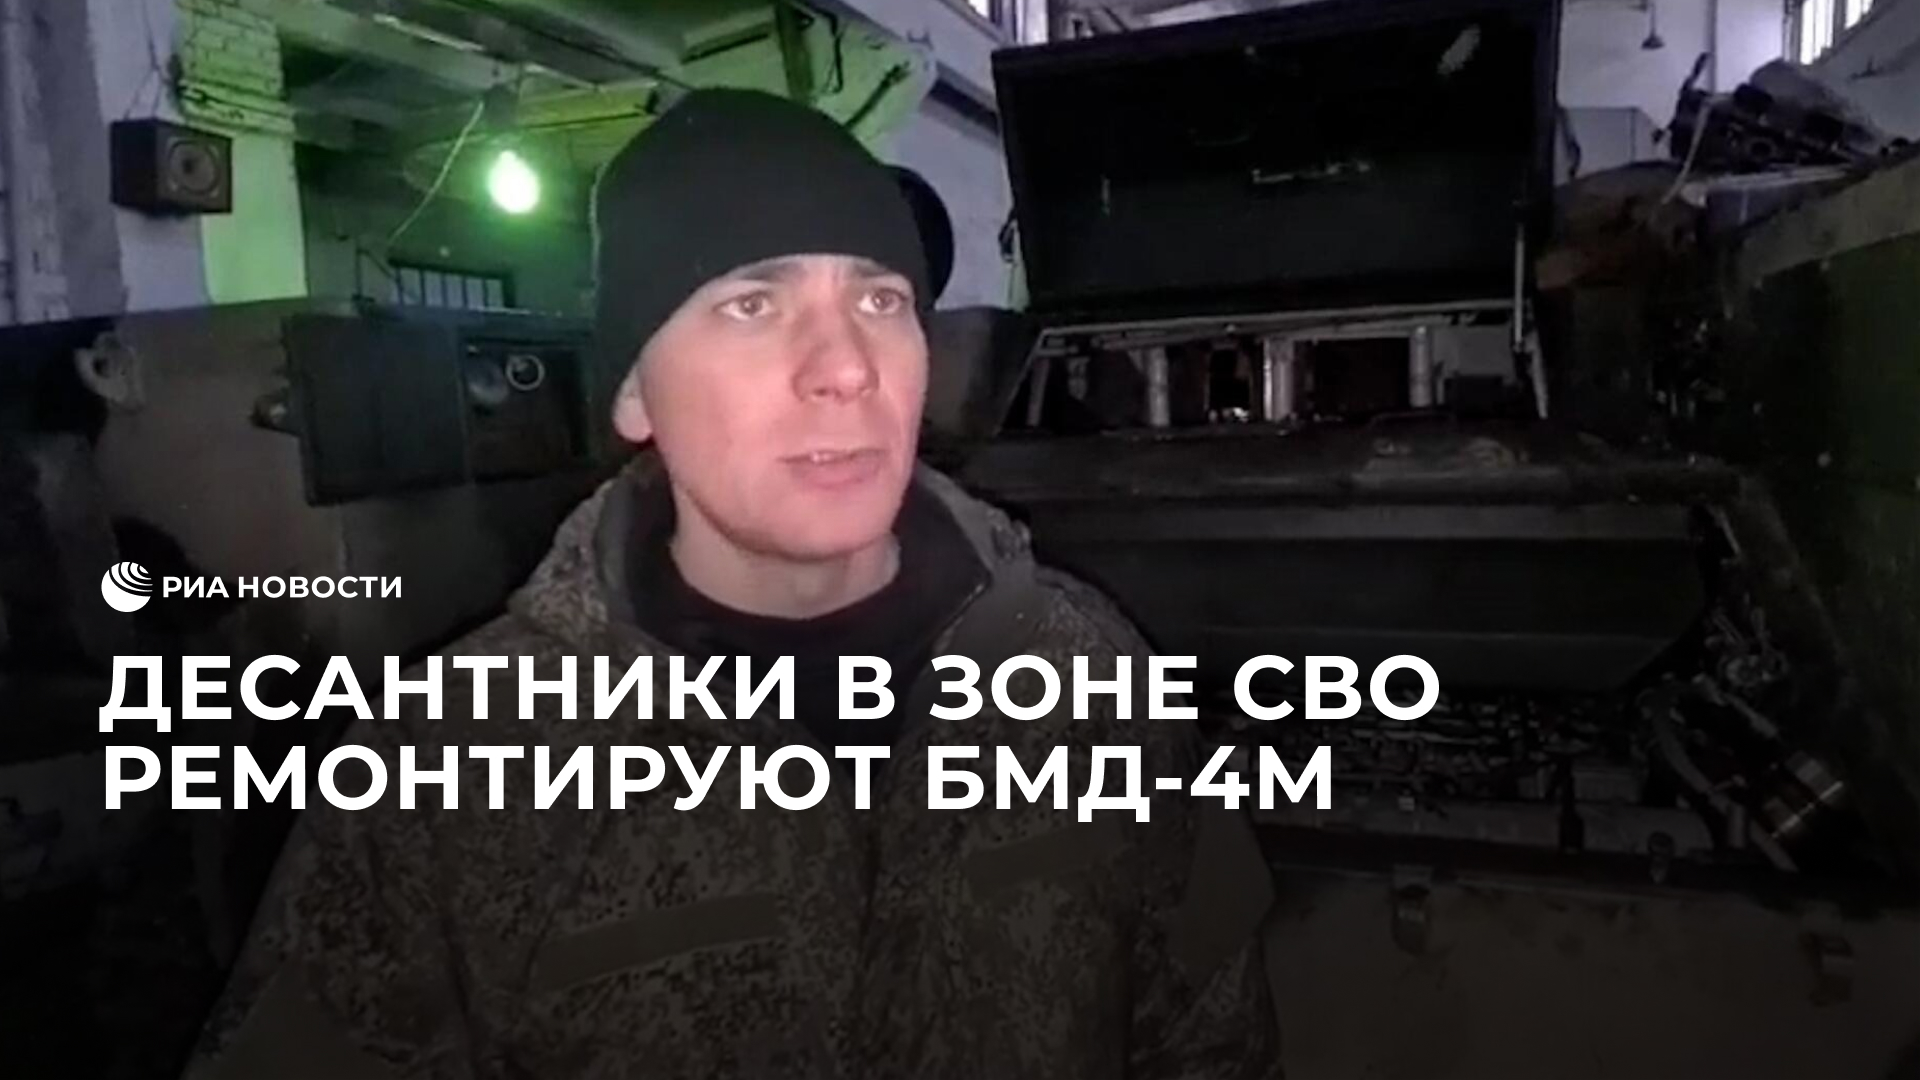 Десантники в зоне спецоперации ремонтируют БМД-4М